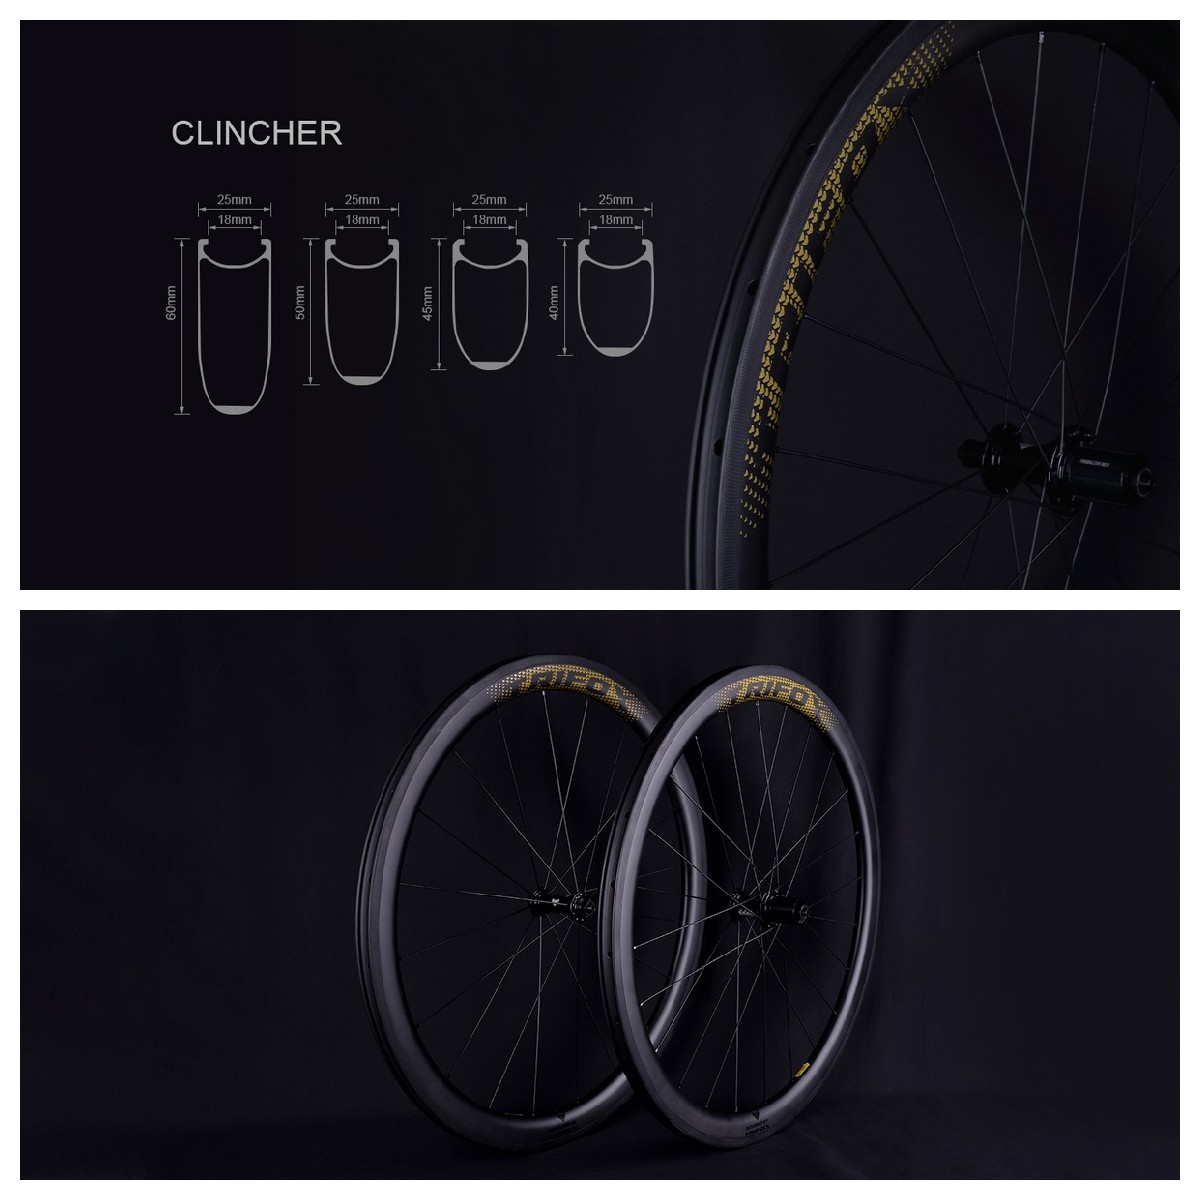 Carbon Fiber Road Bike Frameset X16QR and Road Wheelset WT18 Details 5